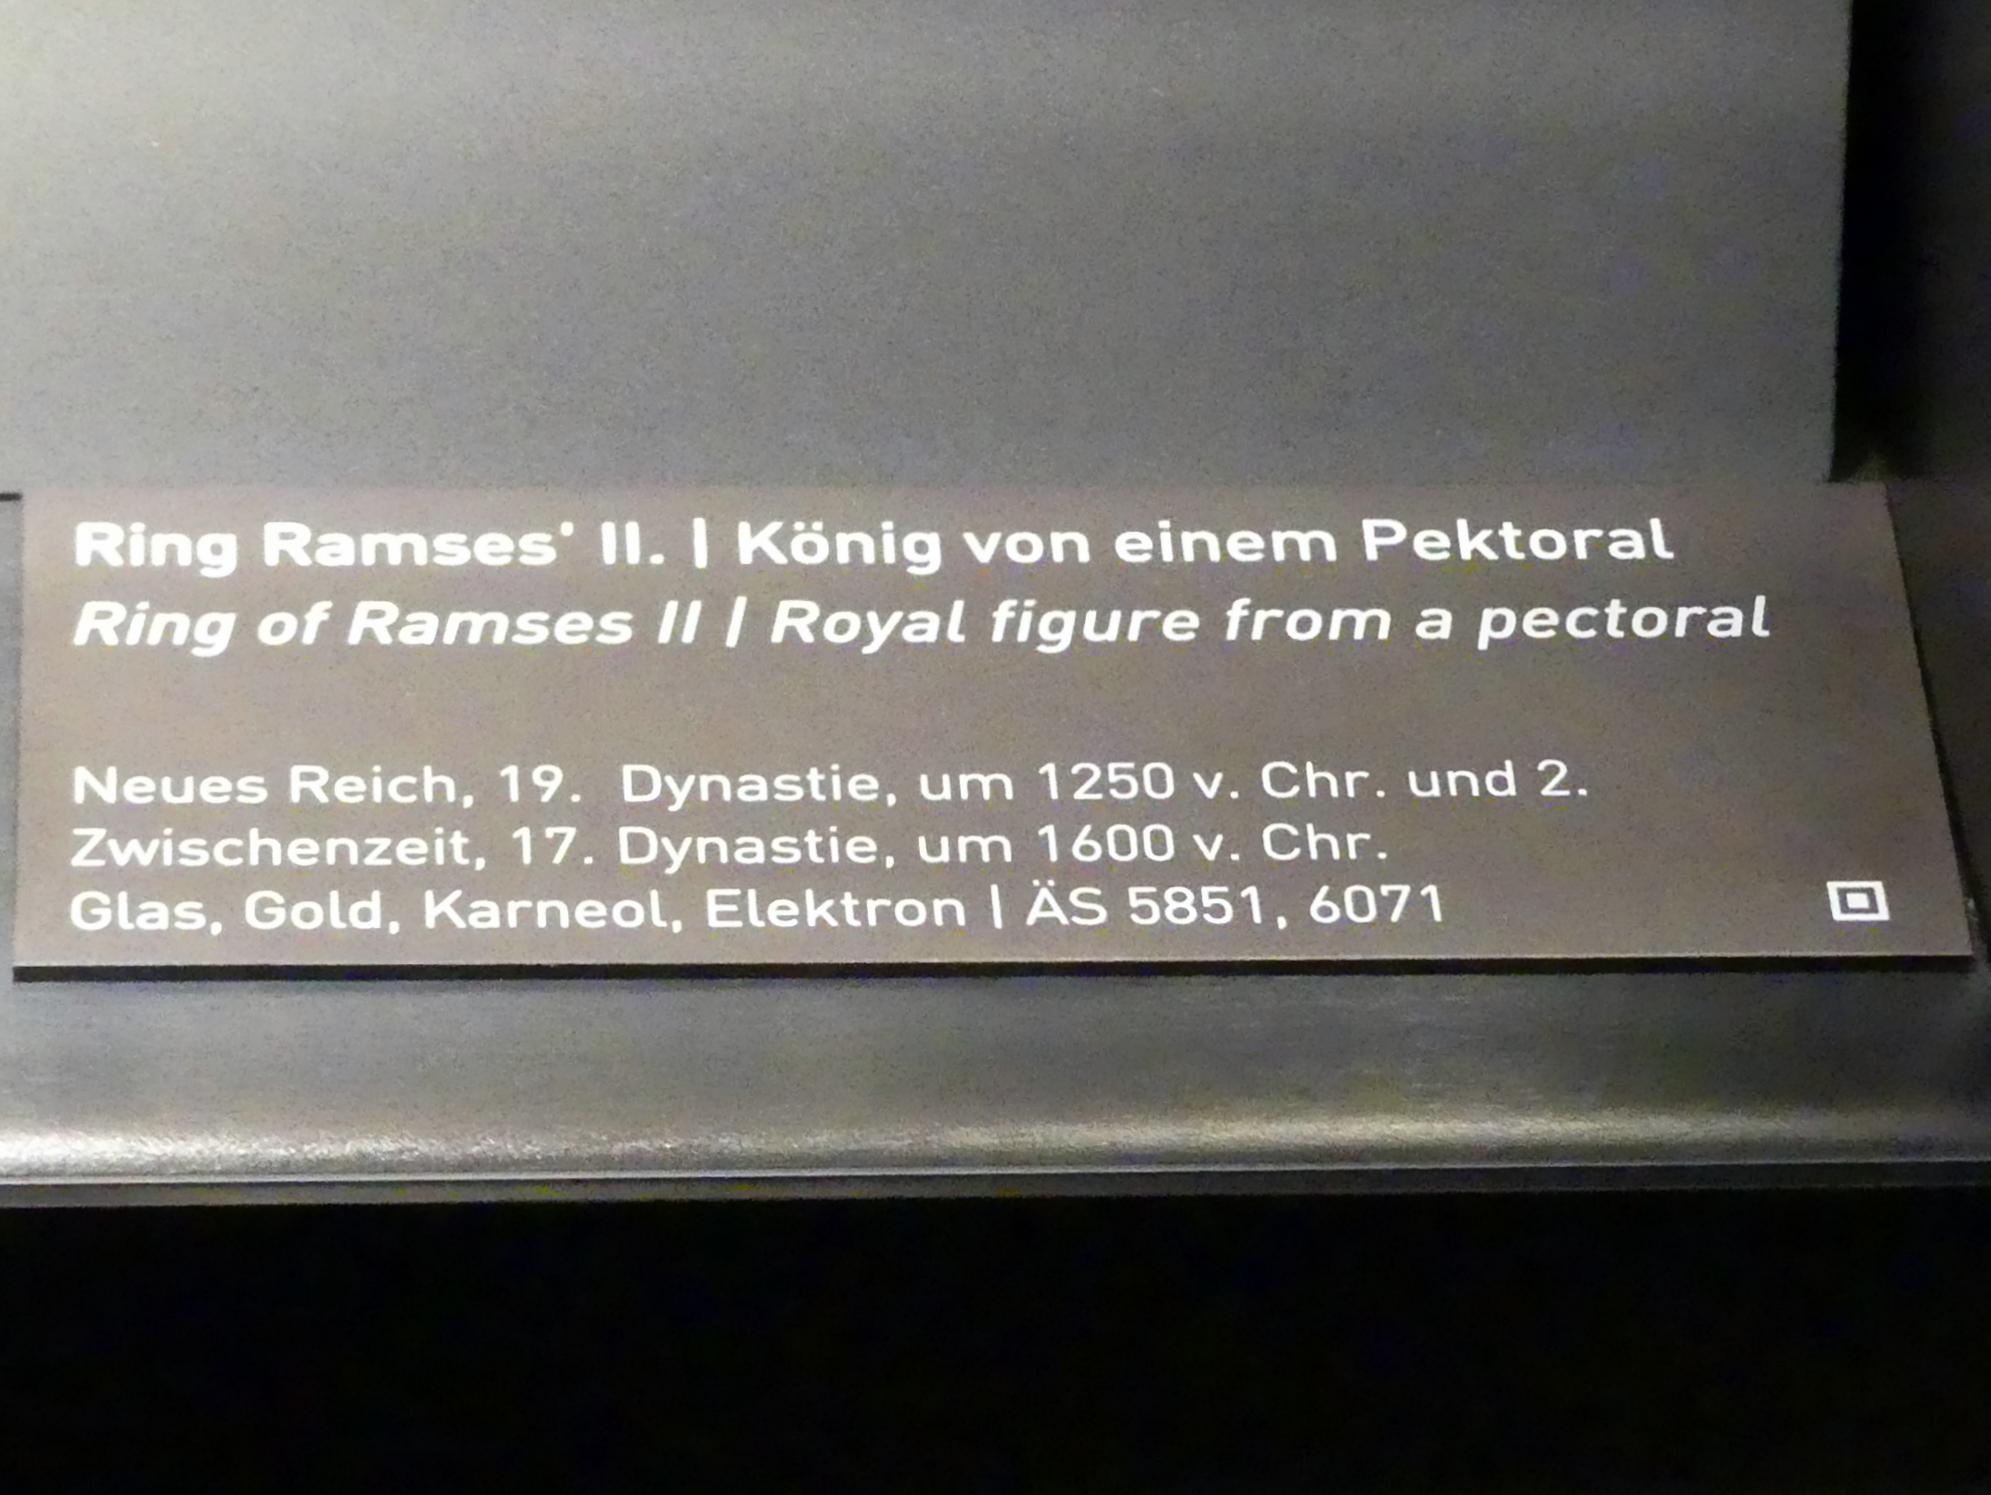 Ring Ramses II., 19. Dynastie, 953 - 887 v. Chr., 1250 v. Chr., Bild 2/2